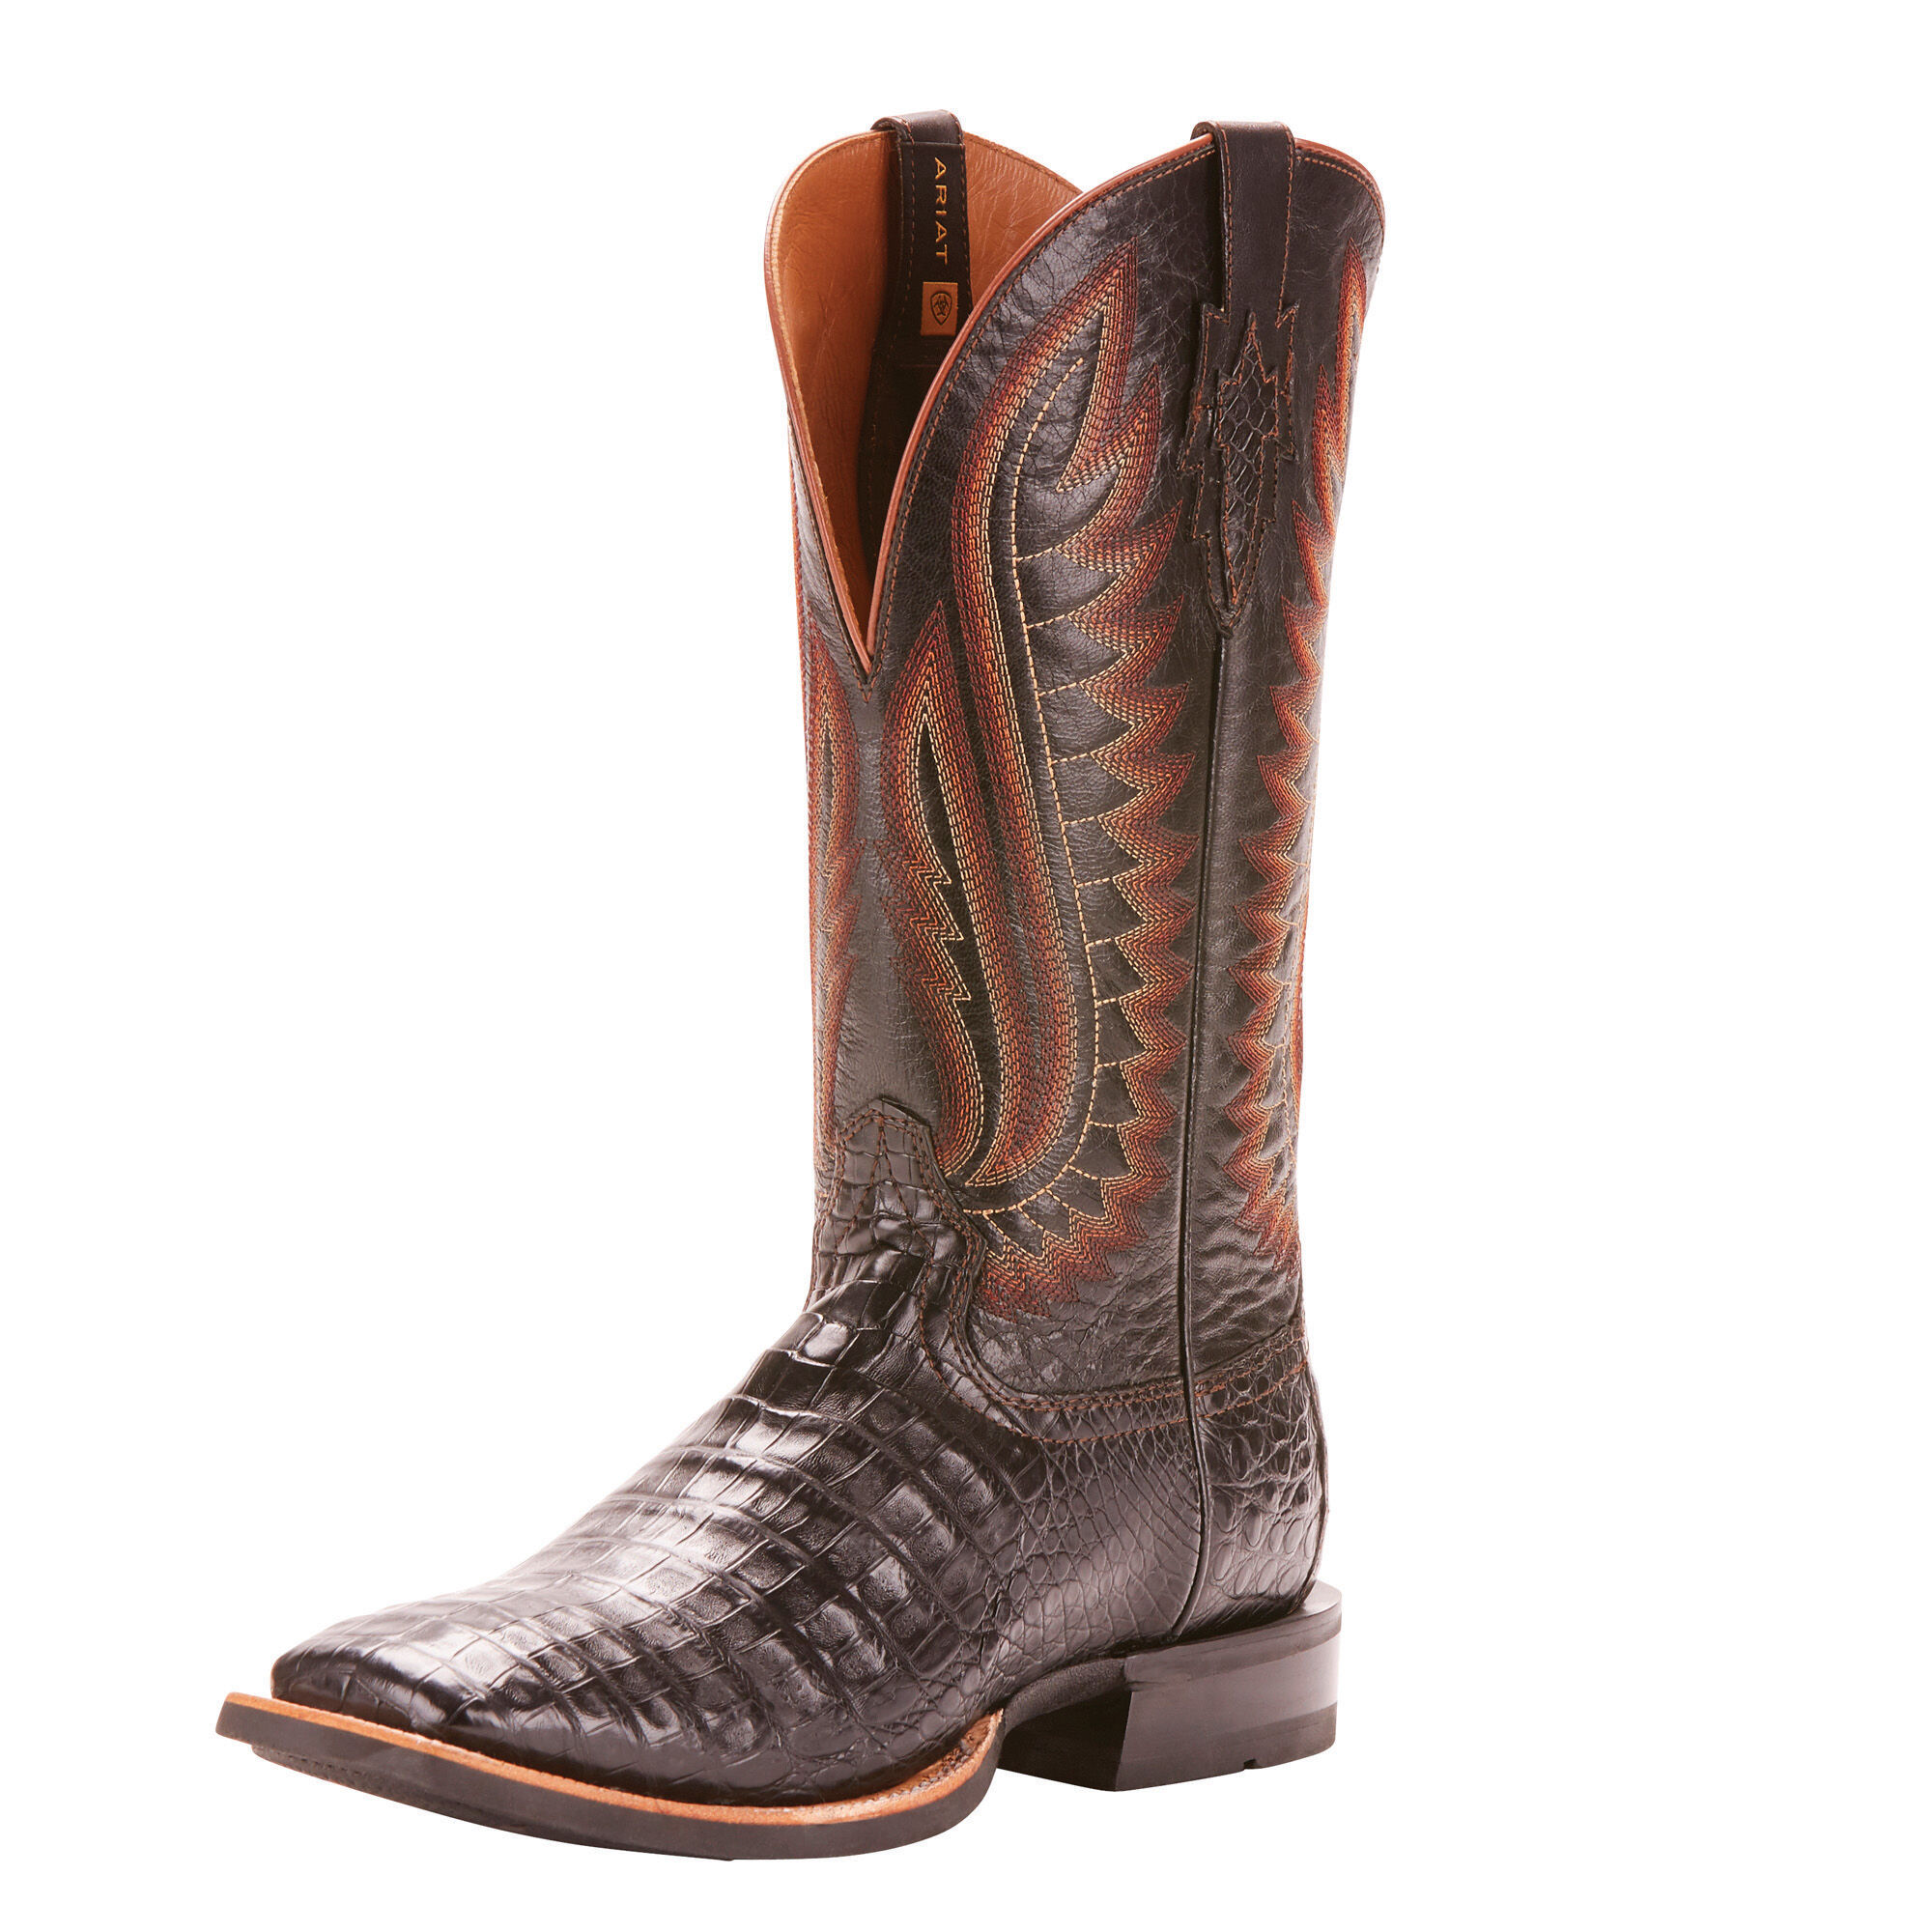 Caiman \u0026 Gator Skin Cowboy Boots 